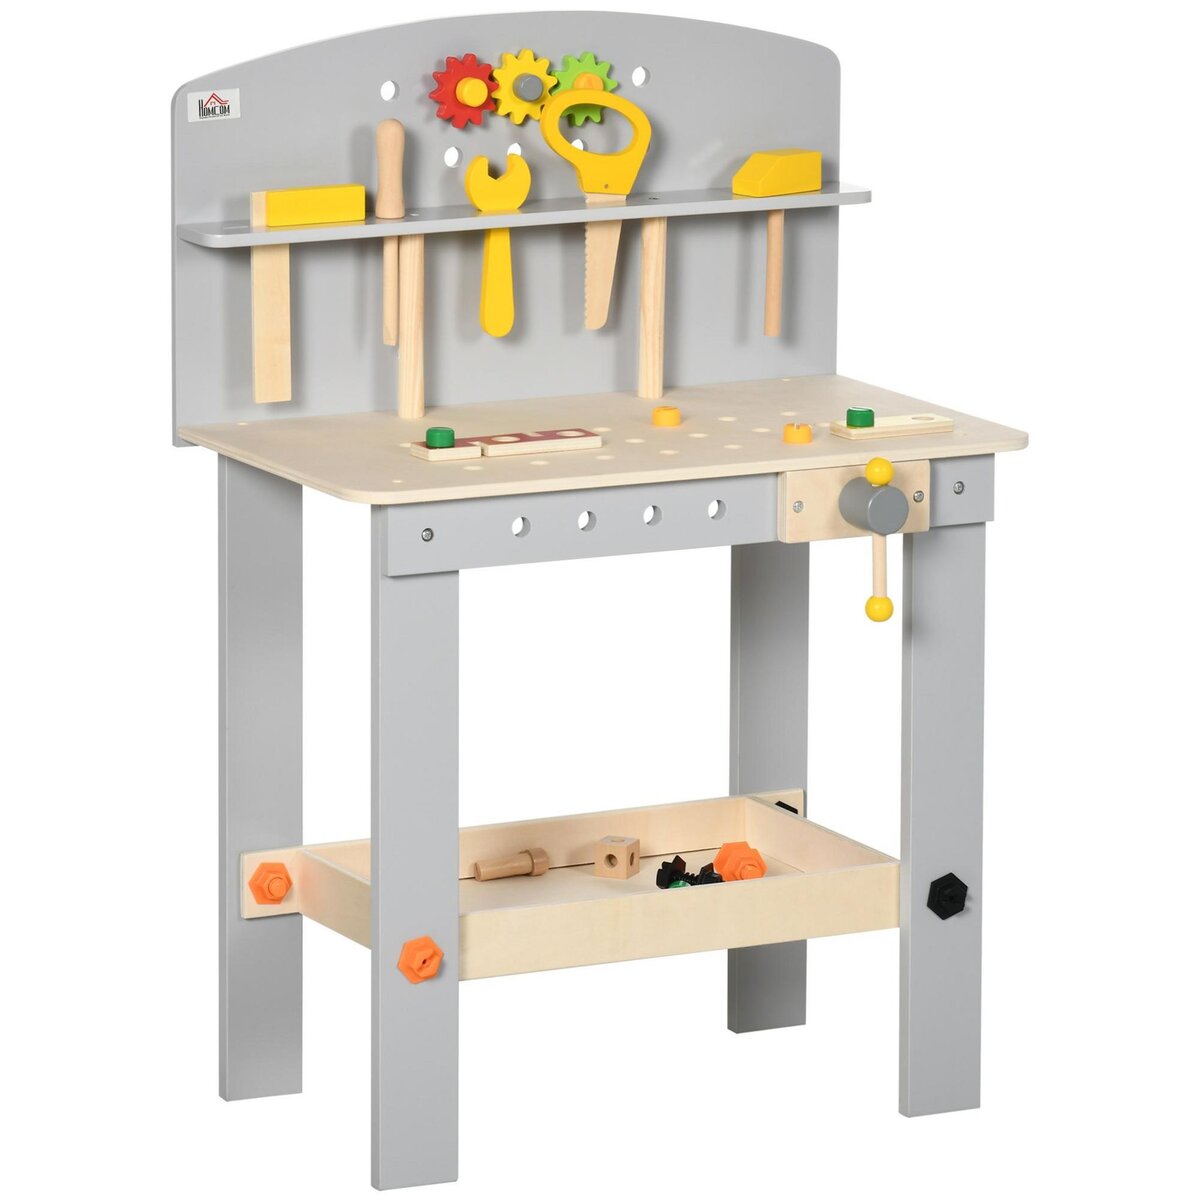 HOMCOM Etabli et outils pour enfant - jeu d'imitation bricolage - nombreux accessoires 31 pièces & outils variés - MDF gris bois pin